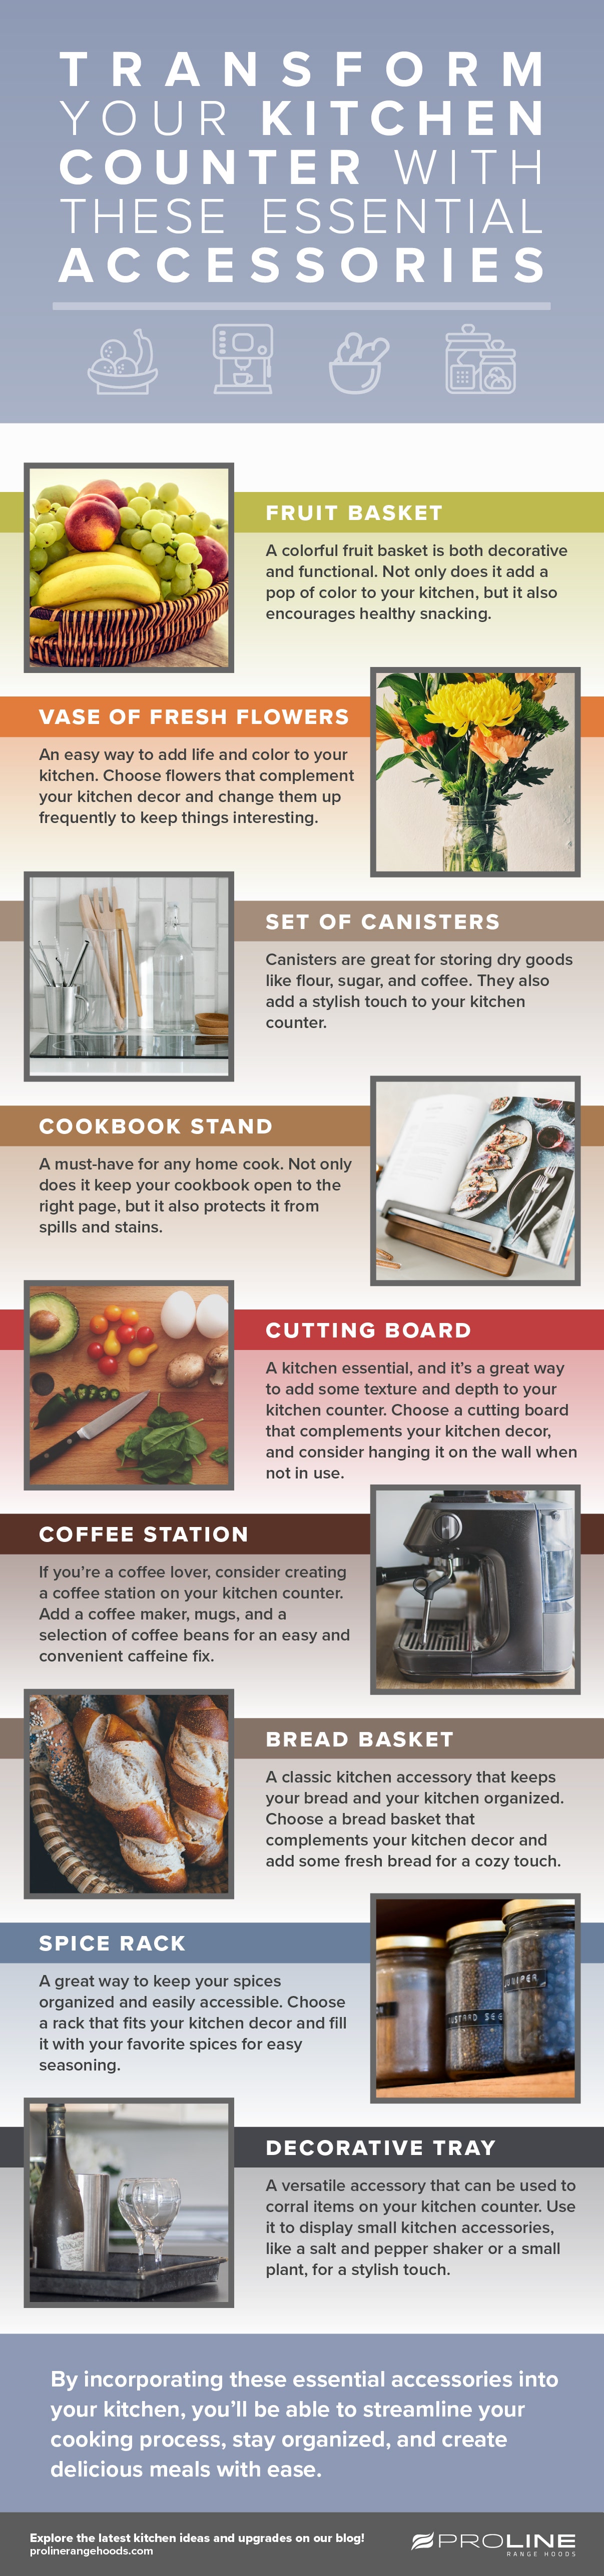 https://www.prolinerangehoods.com/blog/wp-content/uploads/2023/03/Transform_Your_Kitchen_Counter-1.jpg